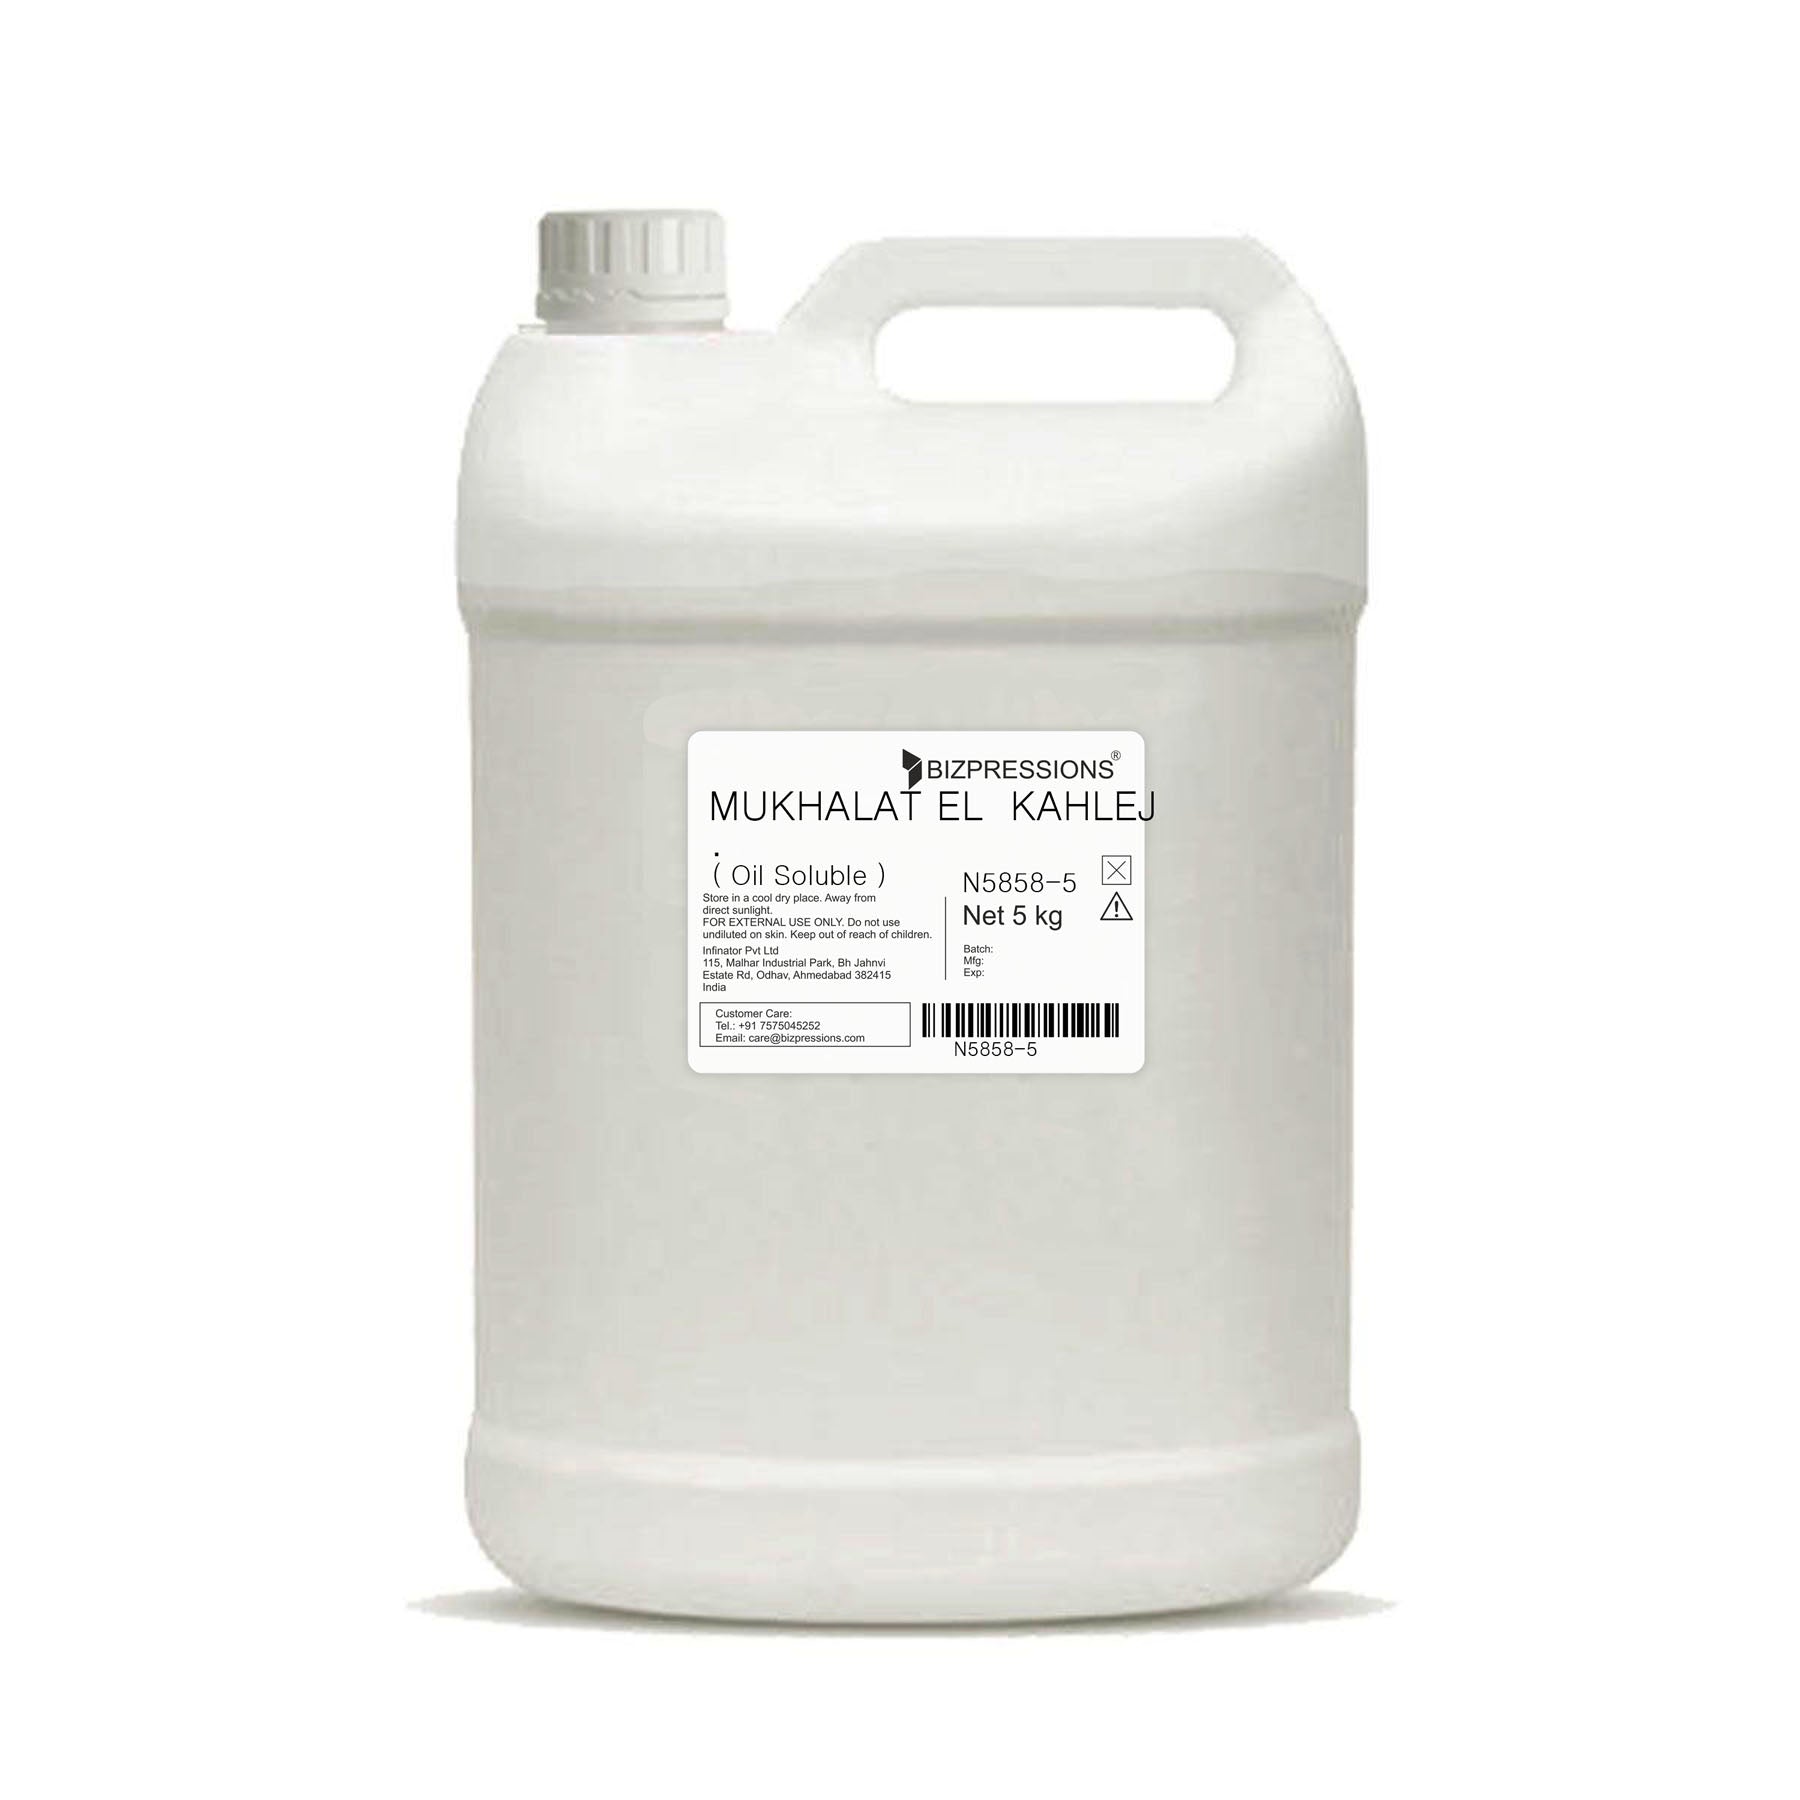 MUKHALAT EL KAHLEJ - Fragrance ( Oil Soluble ) - 5 kg